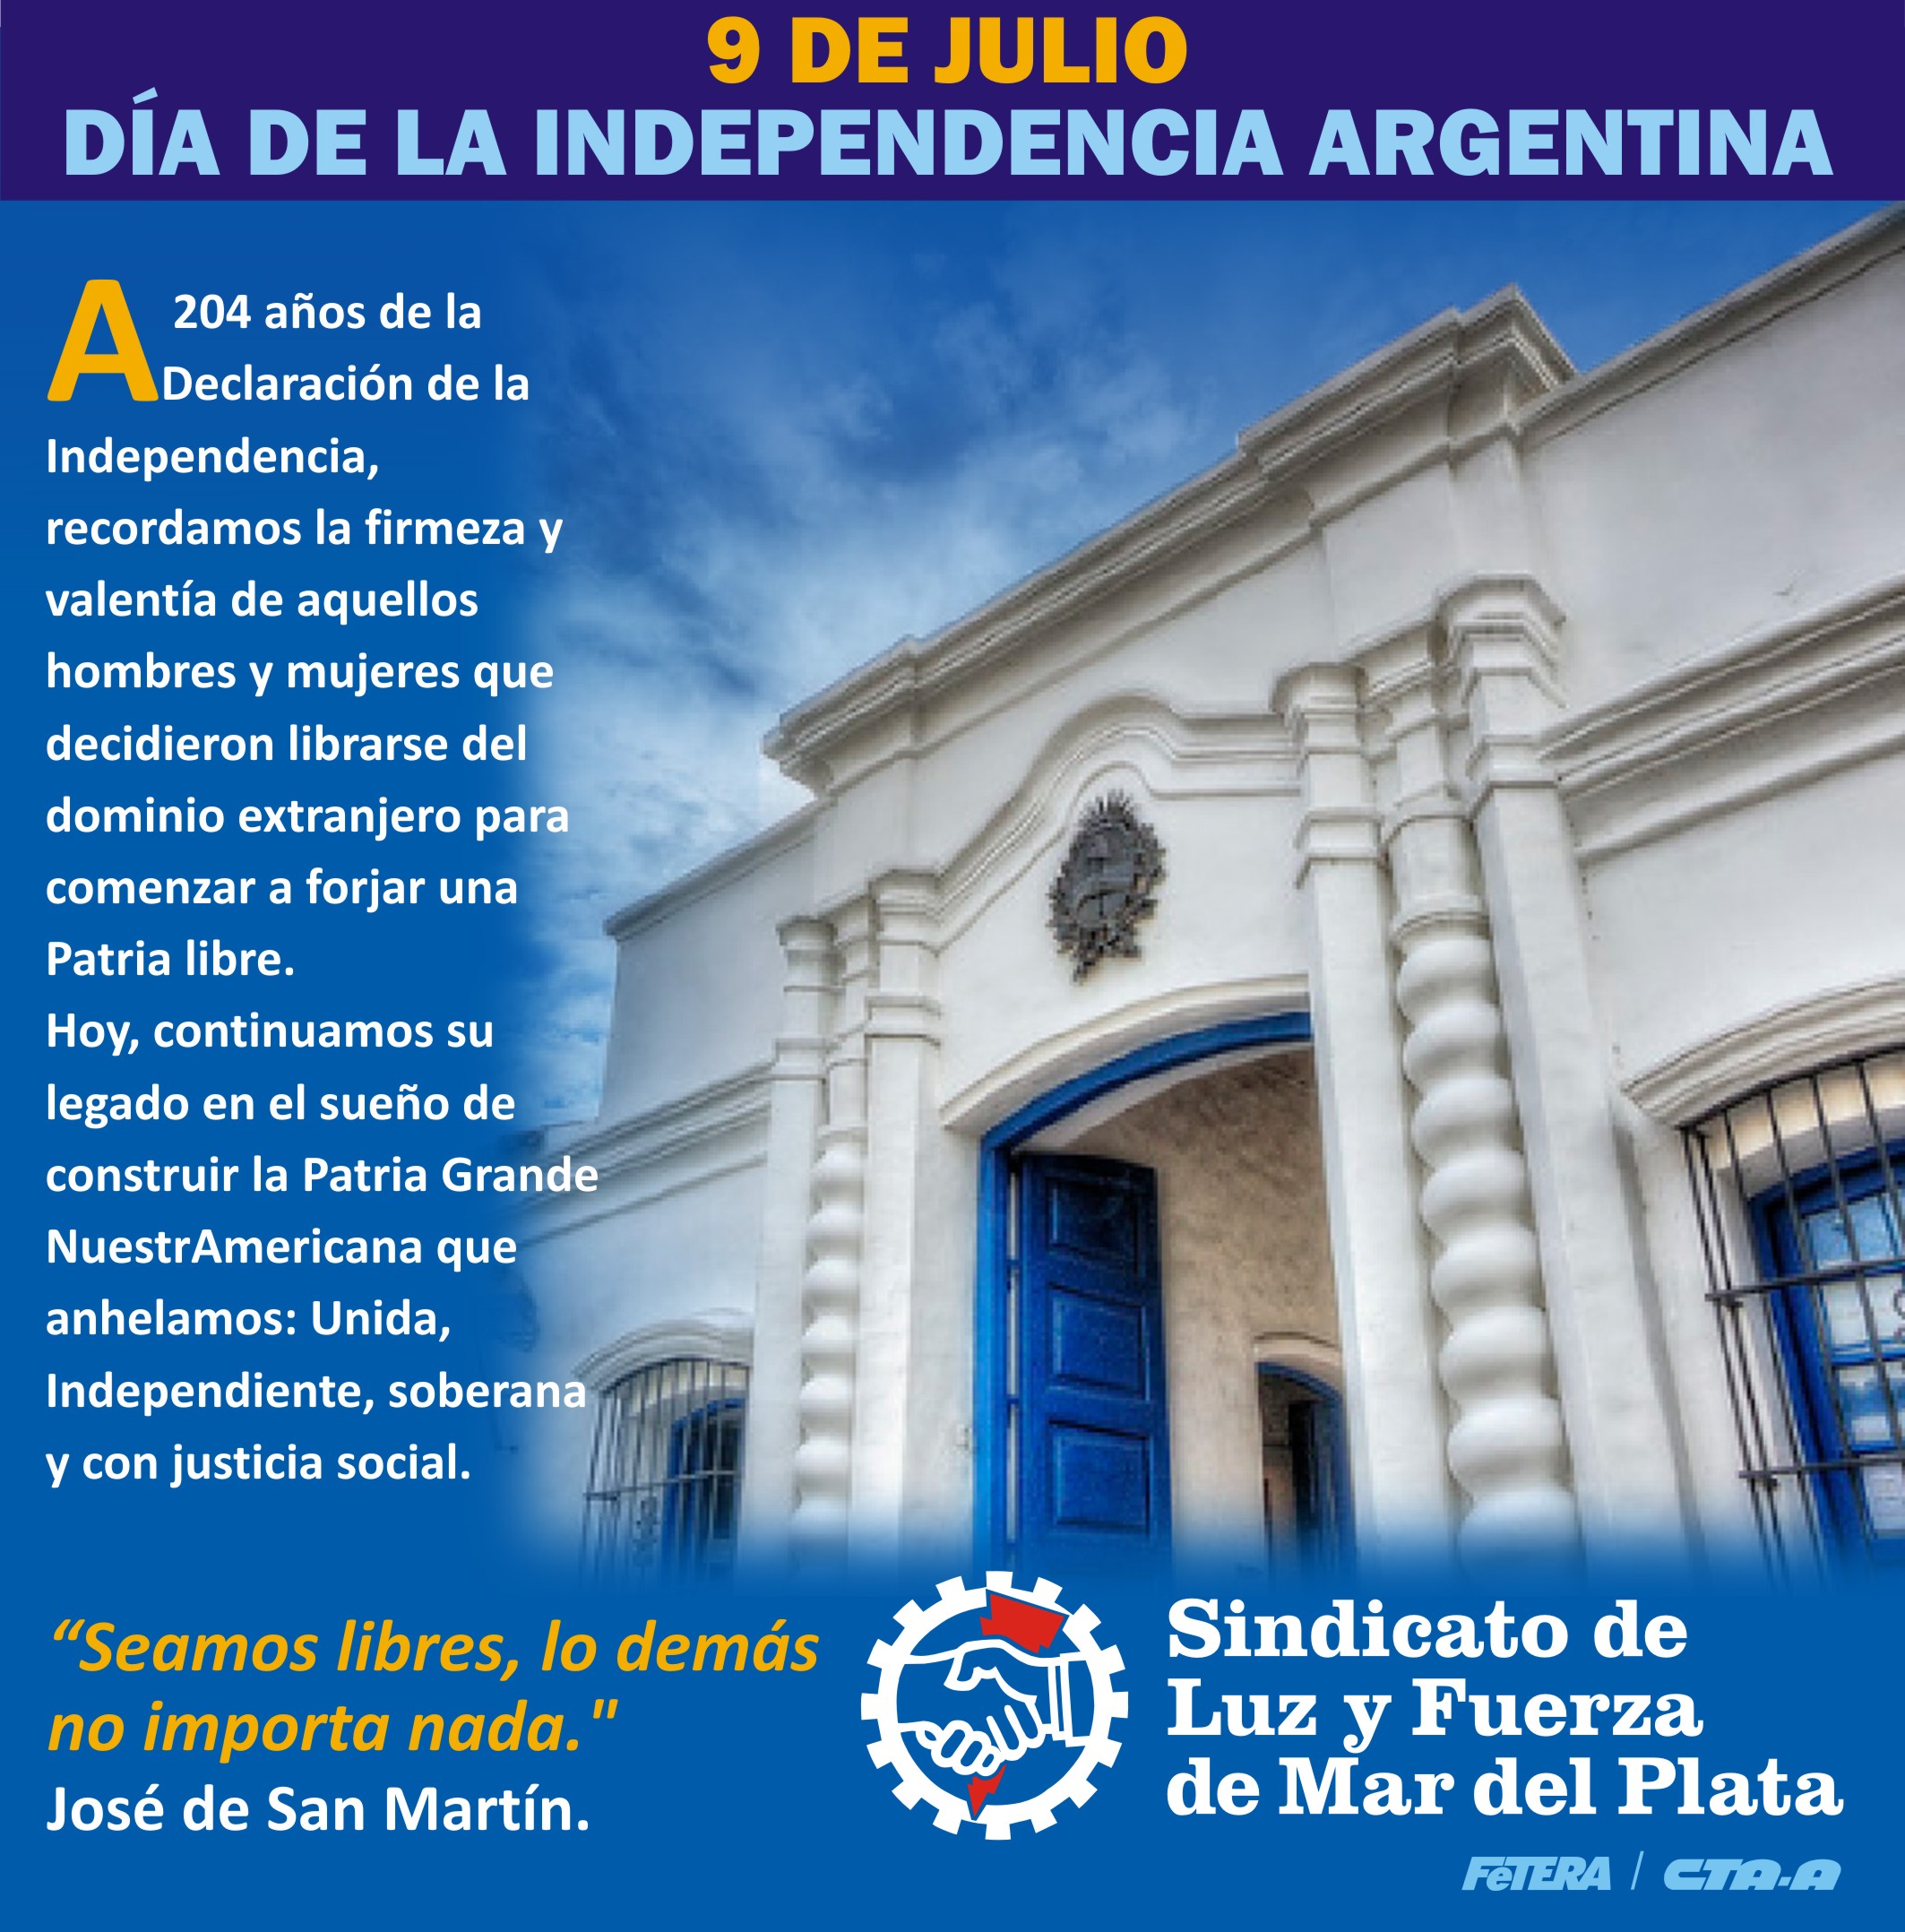 9 DE JULIO - DÍA DE LA INDEPENDENCIA ARGENTINA